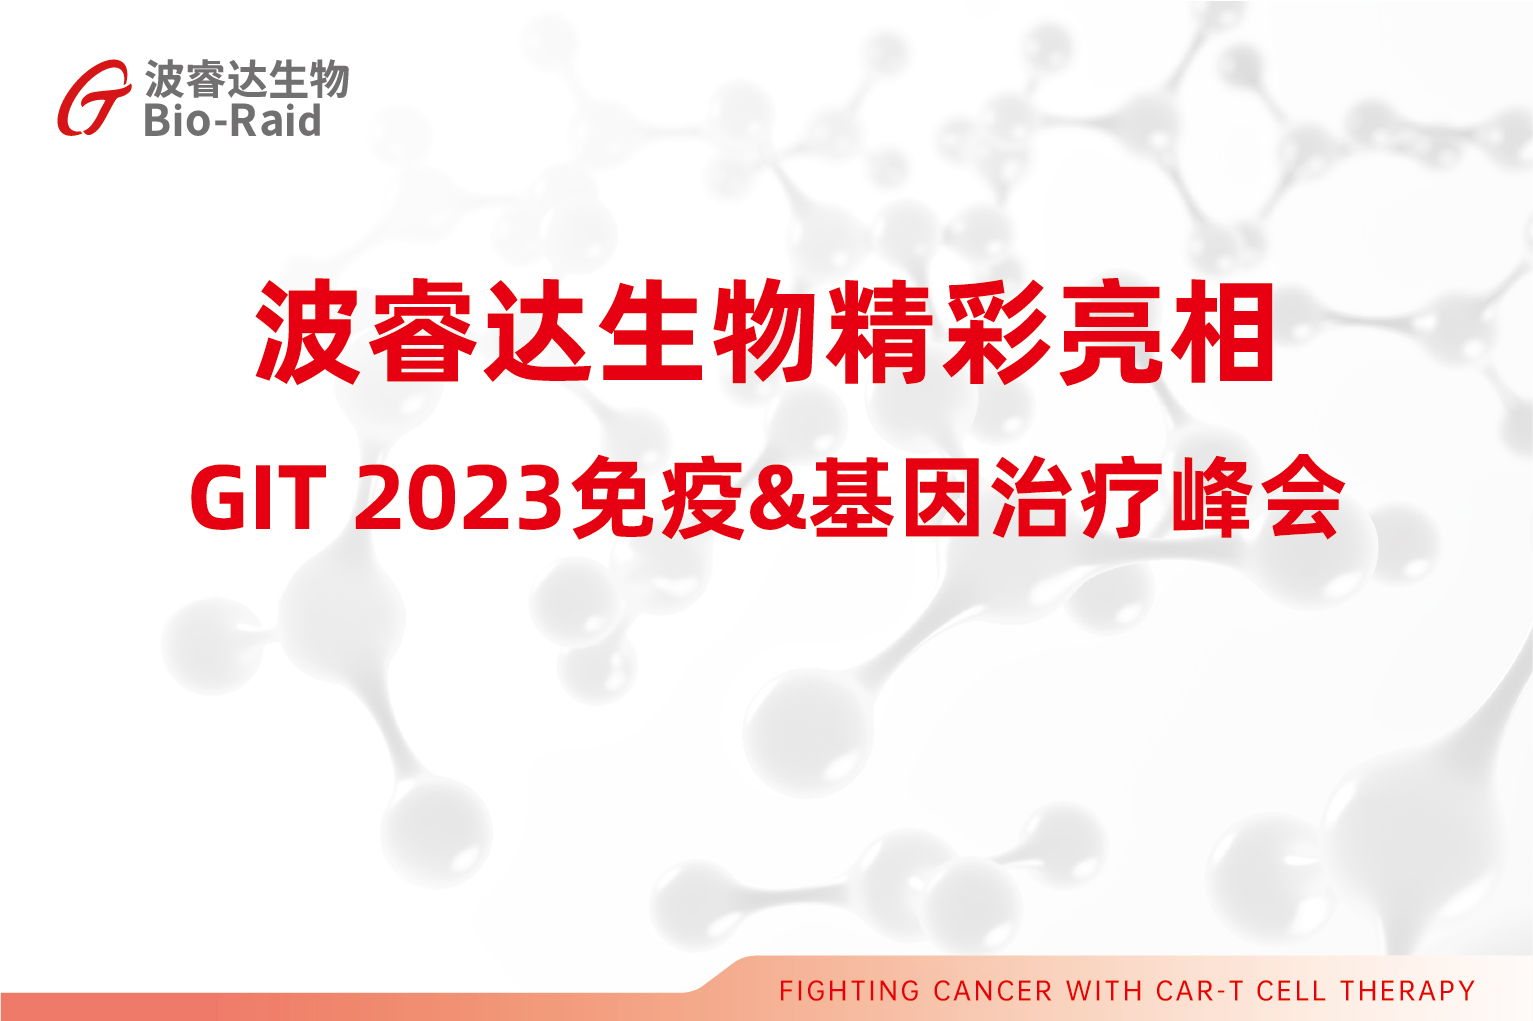 大阳城集团娱乐网站app精彩亮相GIT 2023免疫&基因治疗峰会